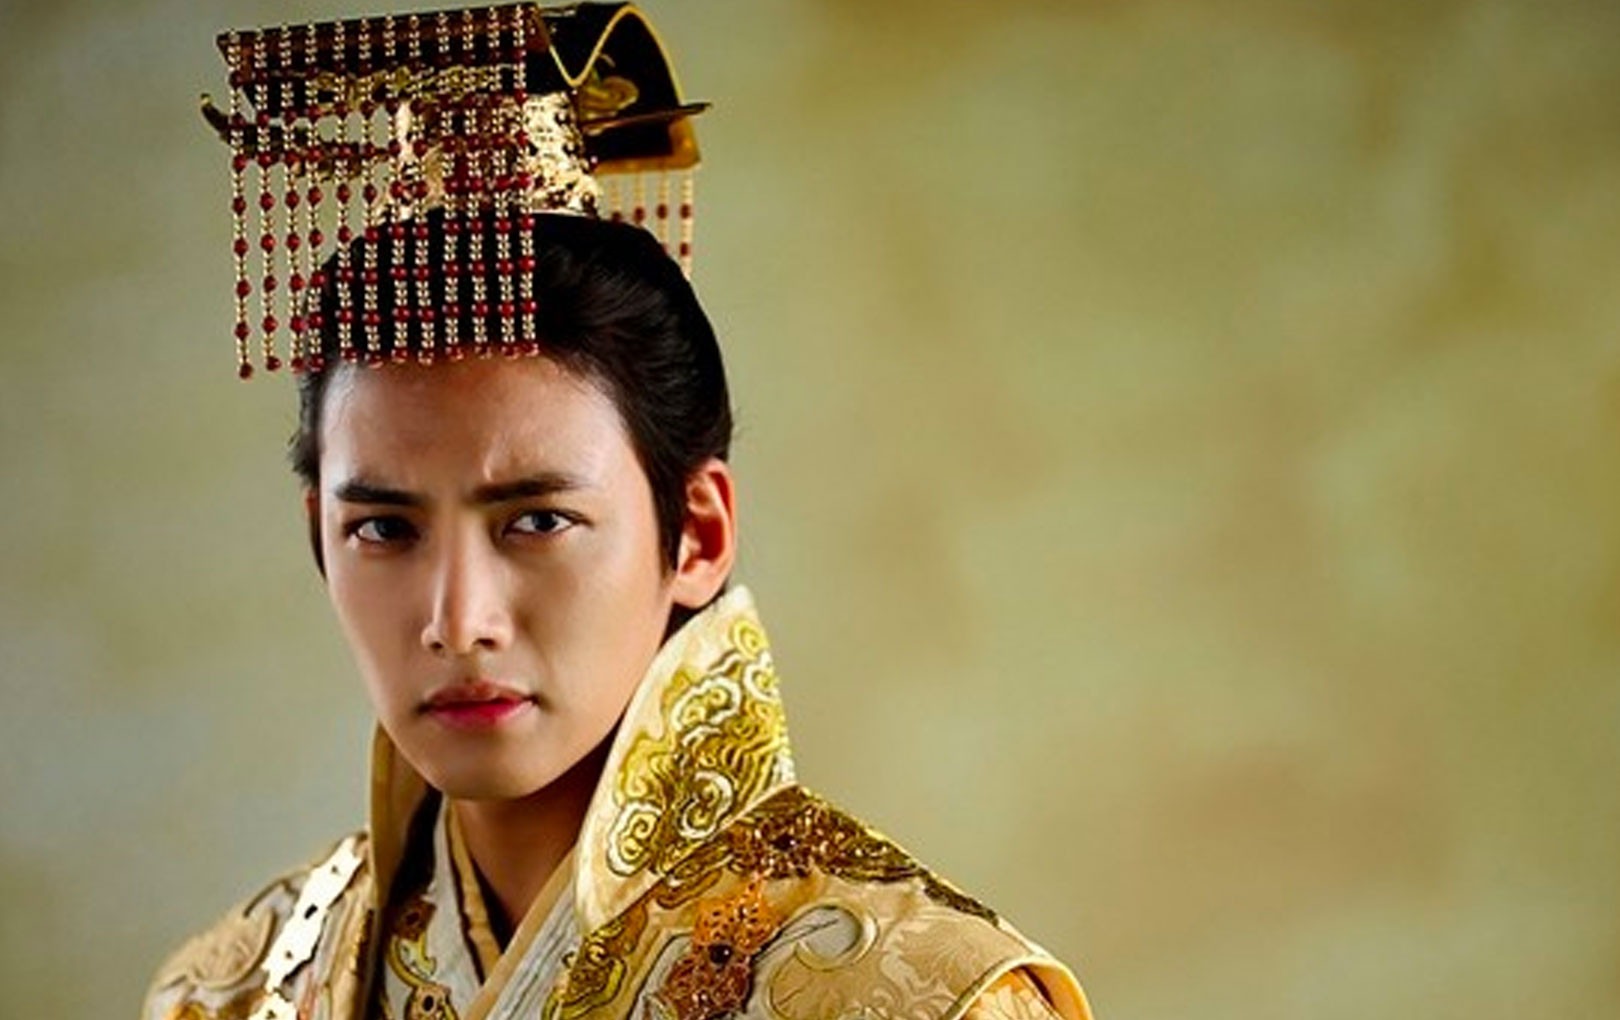 6 quân vương điển trai nhất màn ảnh Hàn: Song Joong Ki nghiêm nghị và quyền lực, Lee Min Ho khí chất ngời ngời​ 7